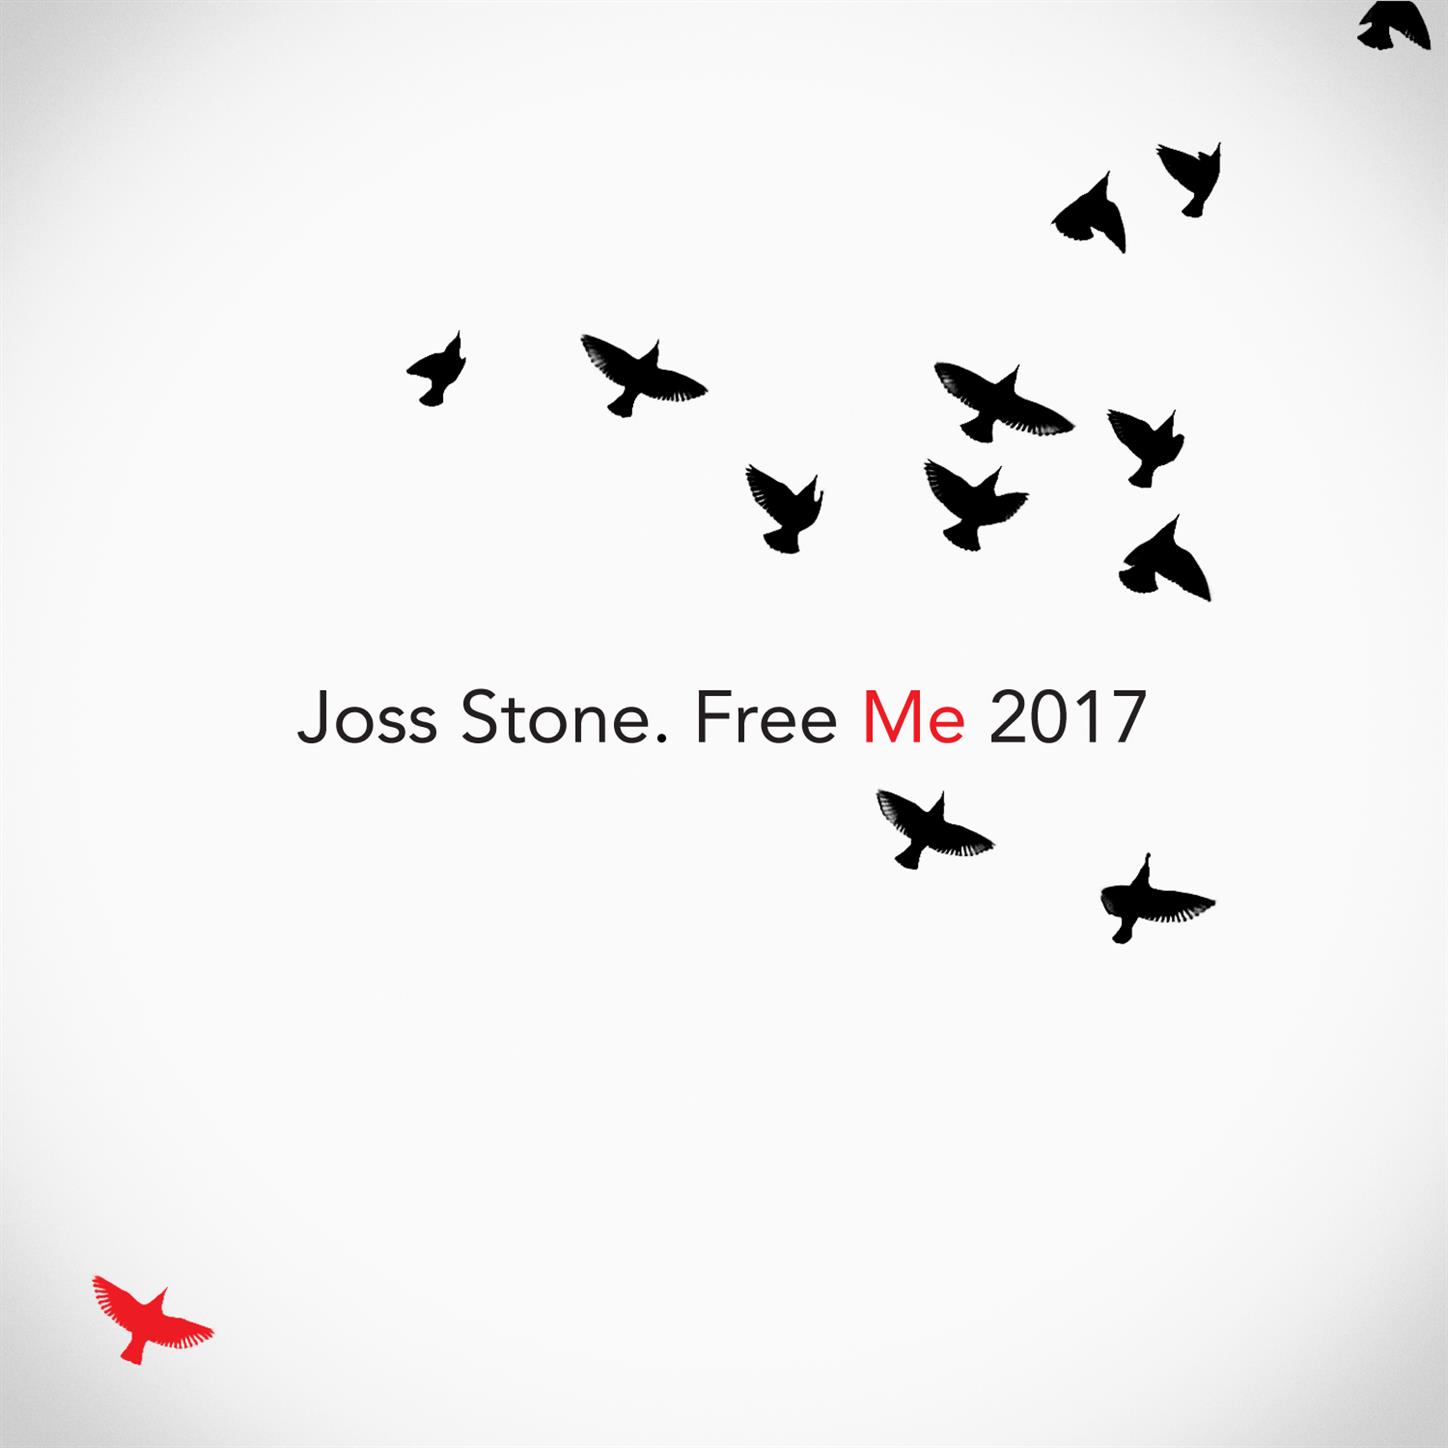 Free Me 2017